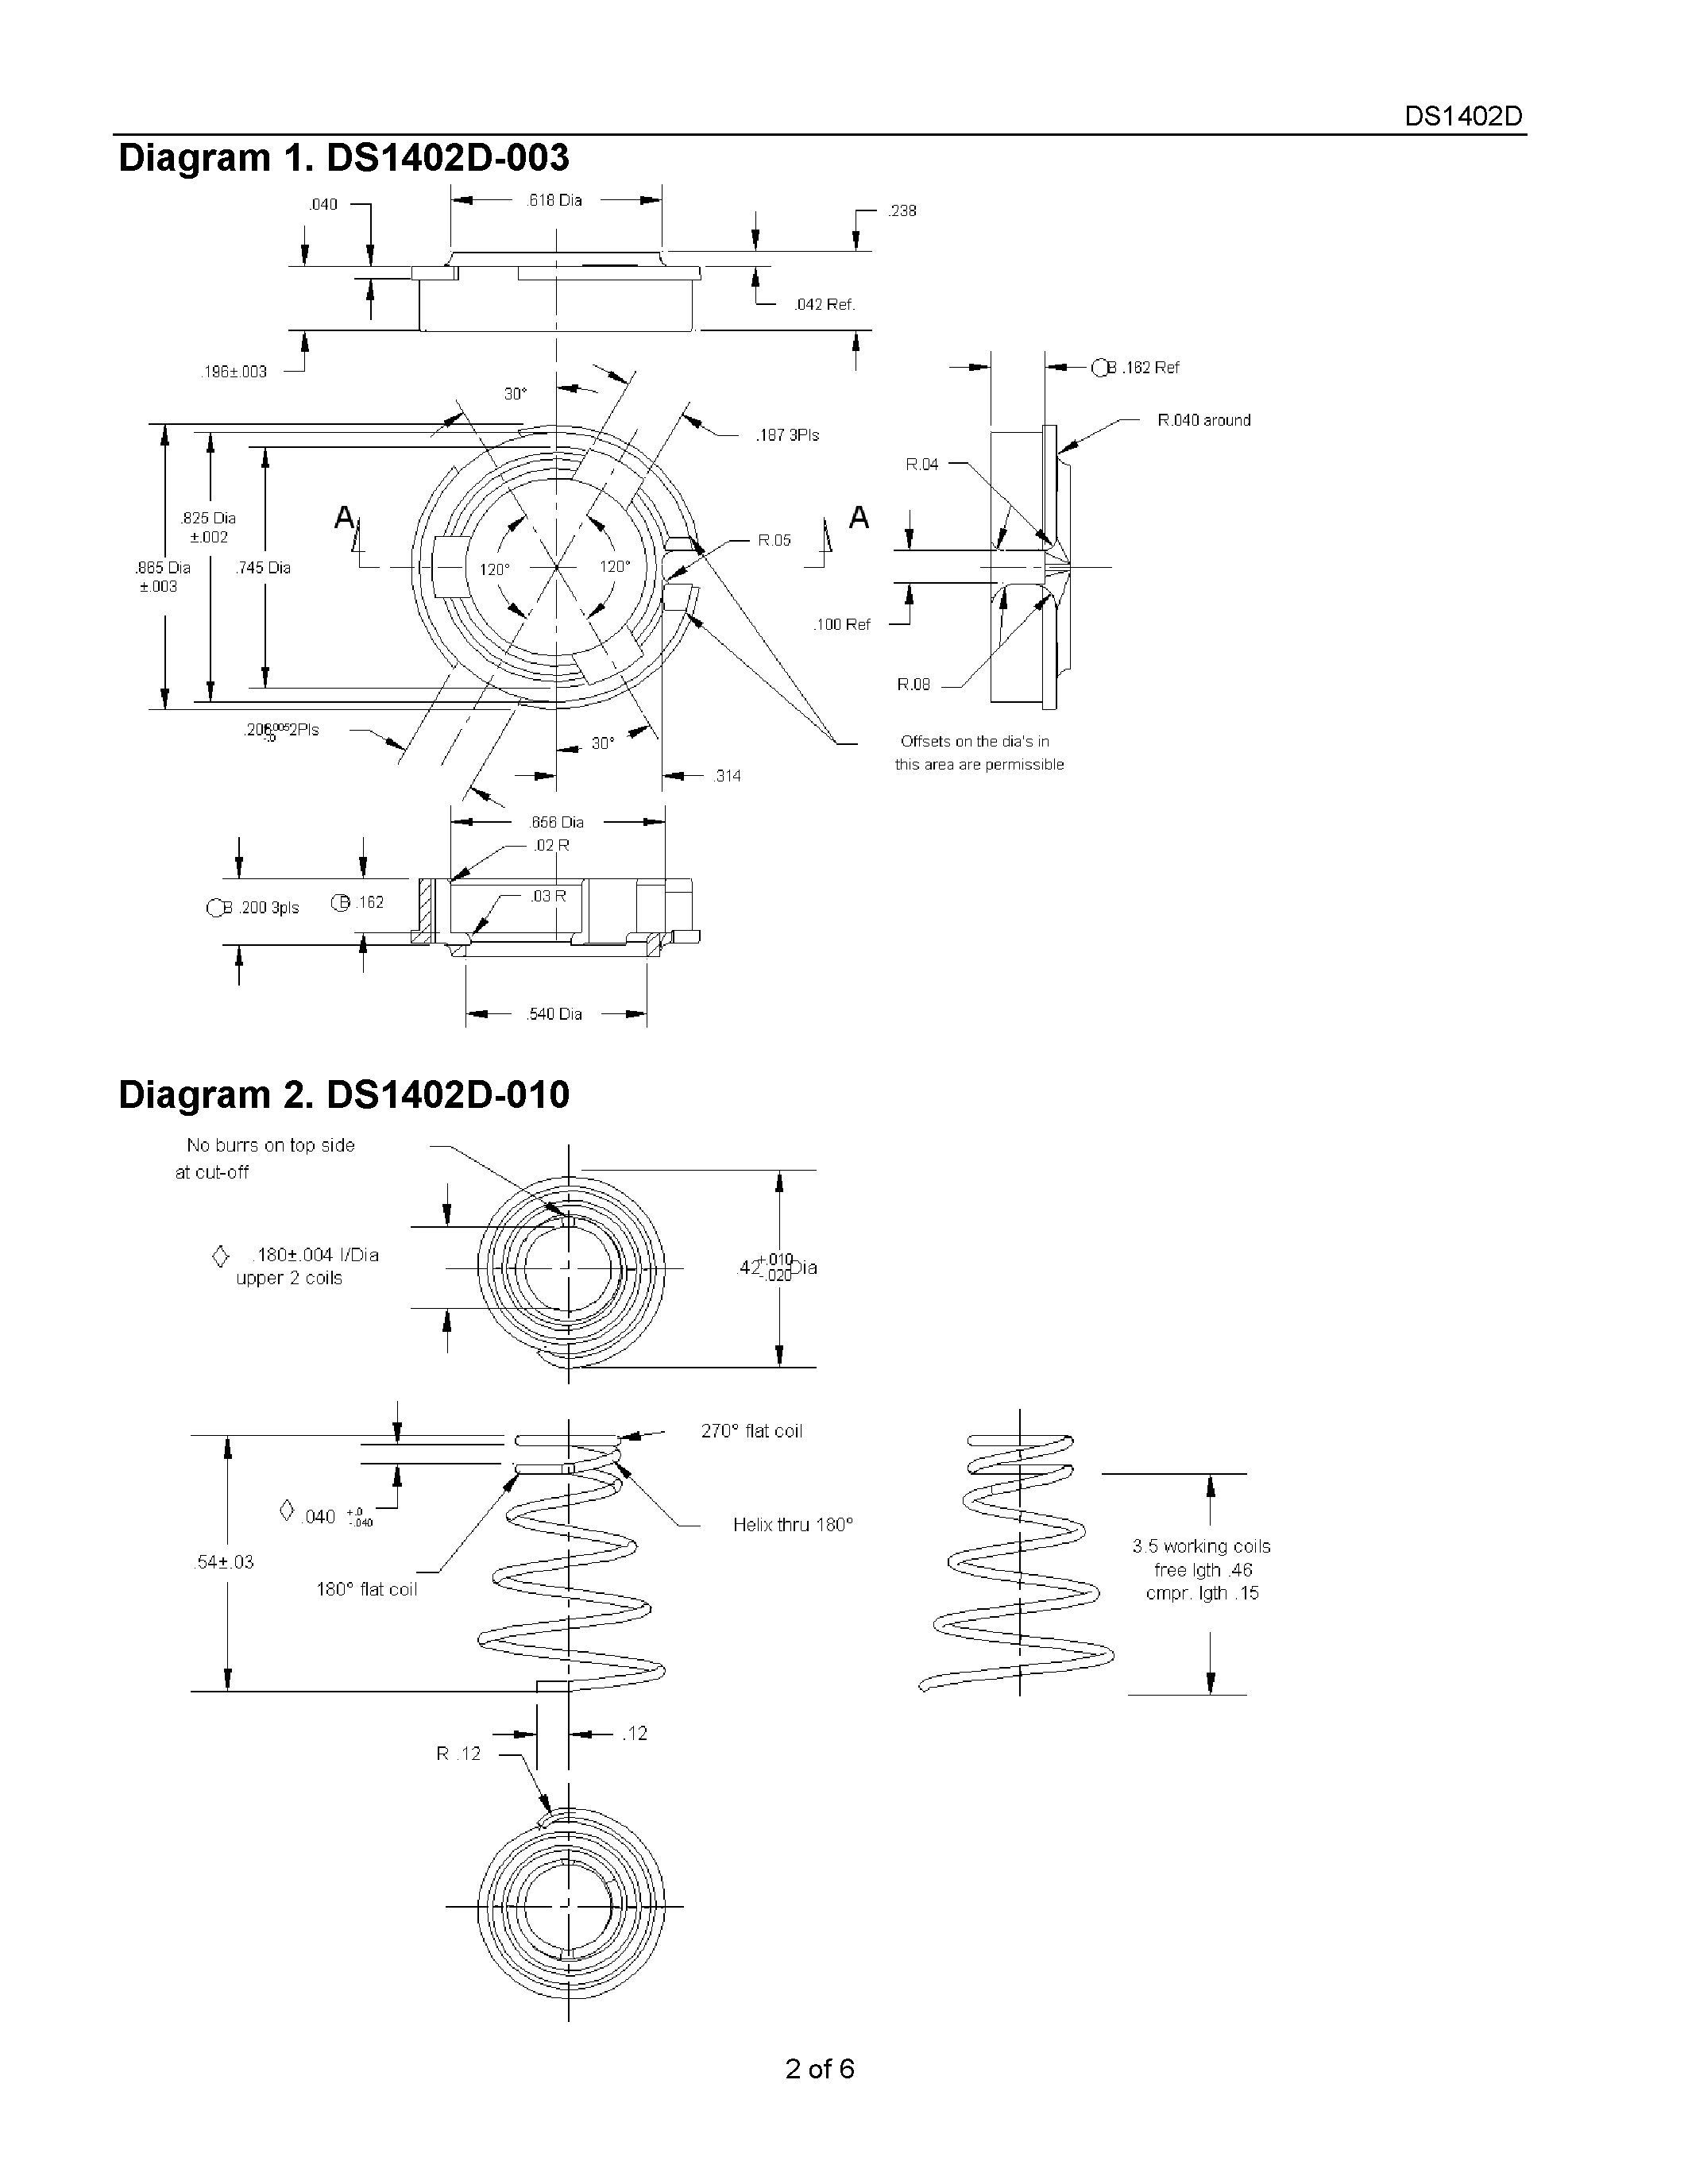 Даташит DS1402D-003 - iButton Probe Component Parts страница 2